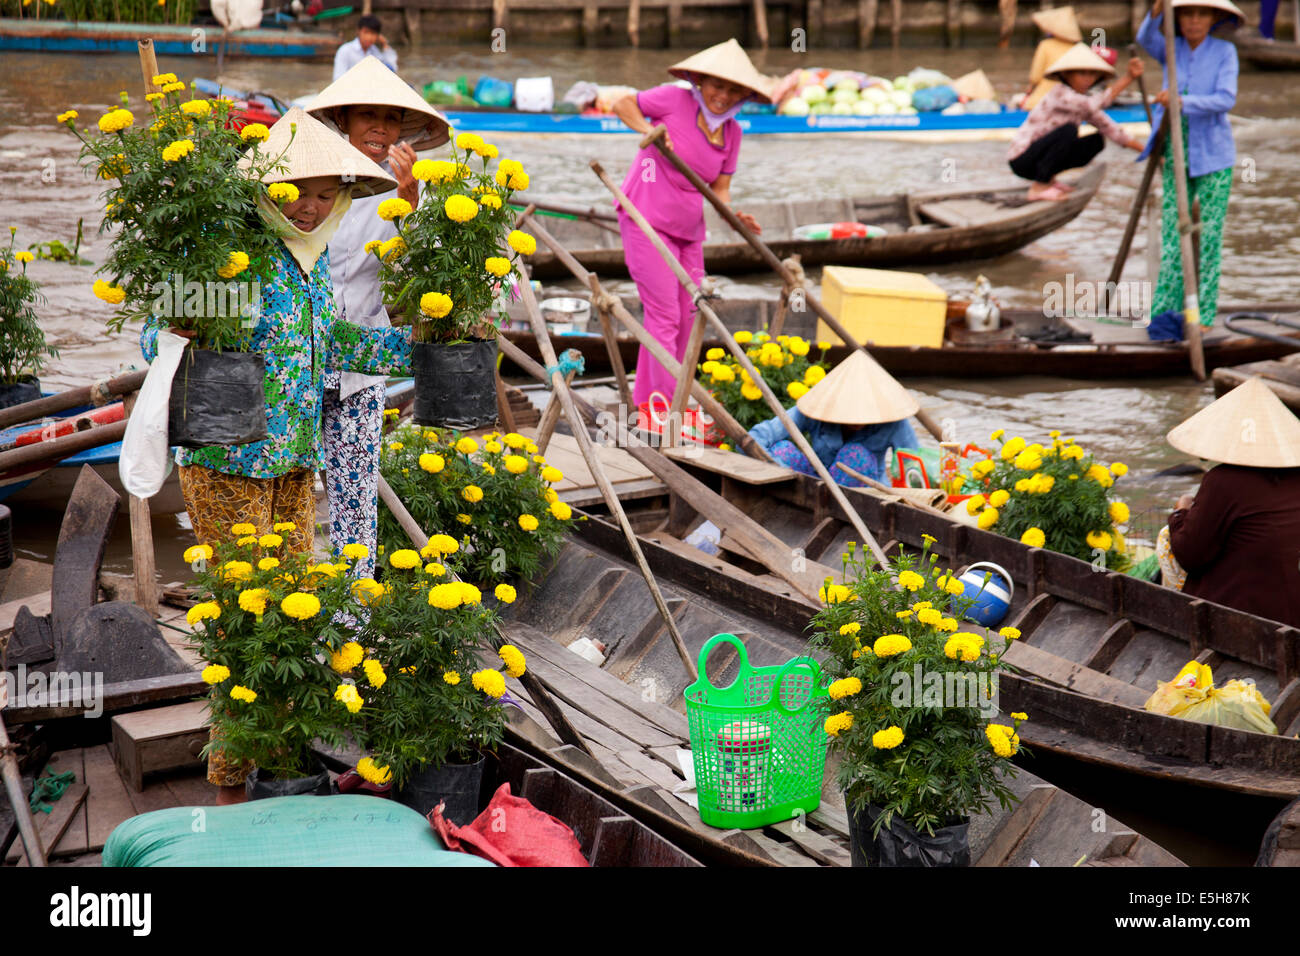 Donne che indossano cappelli conici scaricare fiori gialli da una barca nel mercato galleggiante nella Soc Trang, una città del Delta del Mekong. Foto Stock